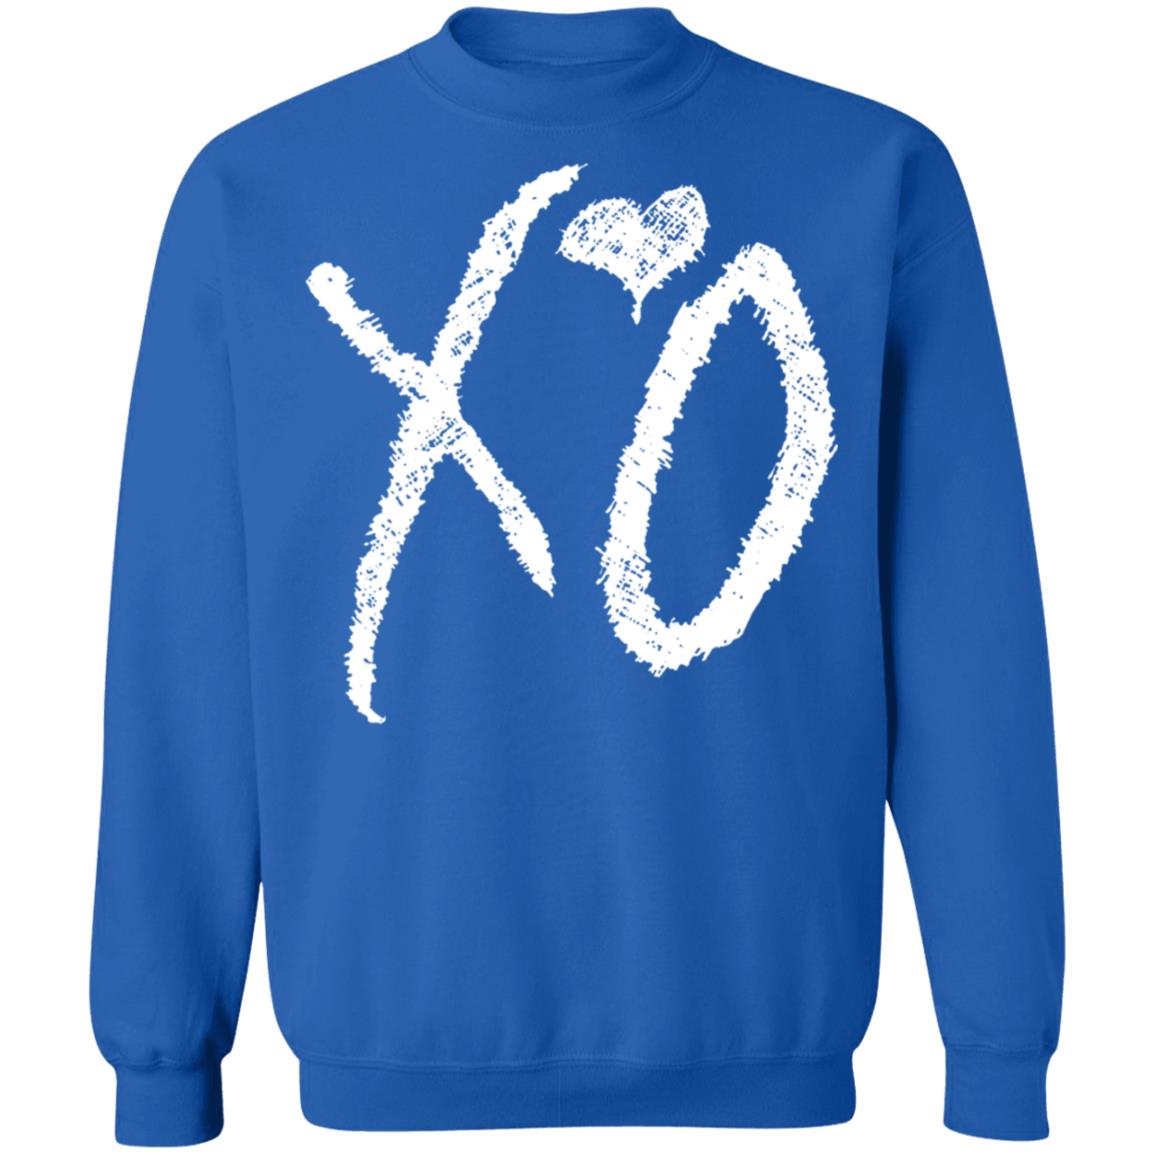 X O Logo Crewneck T-Shirt